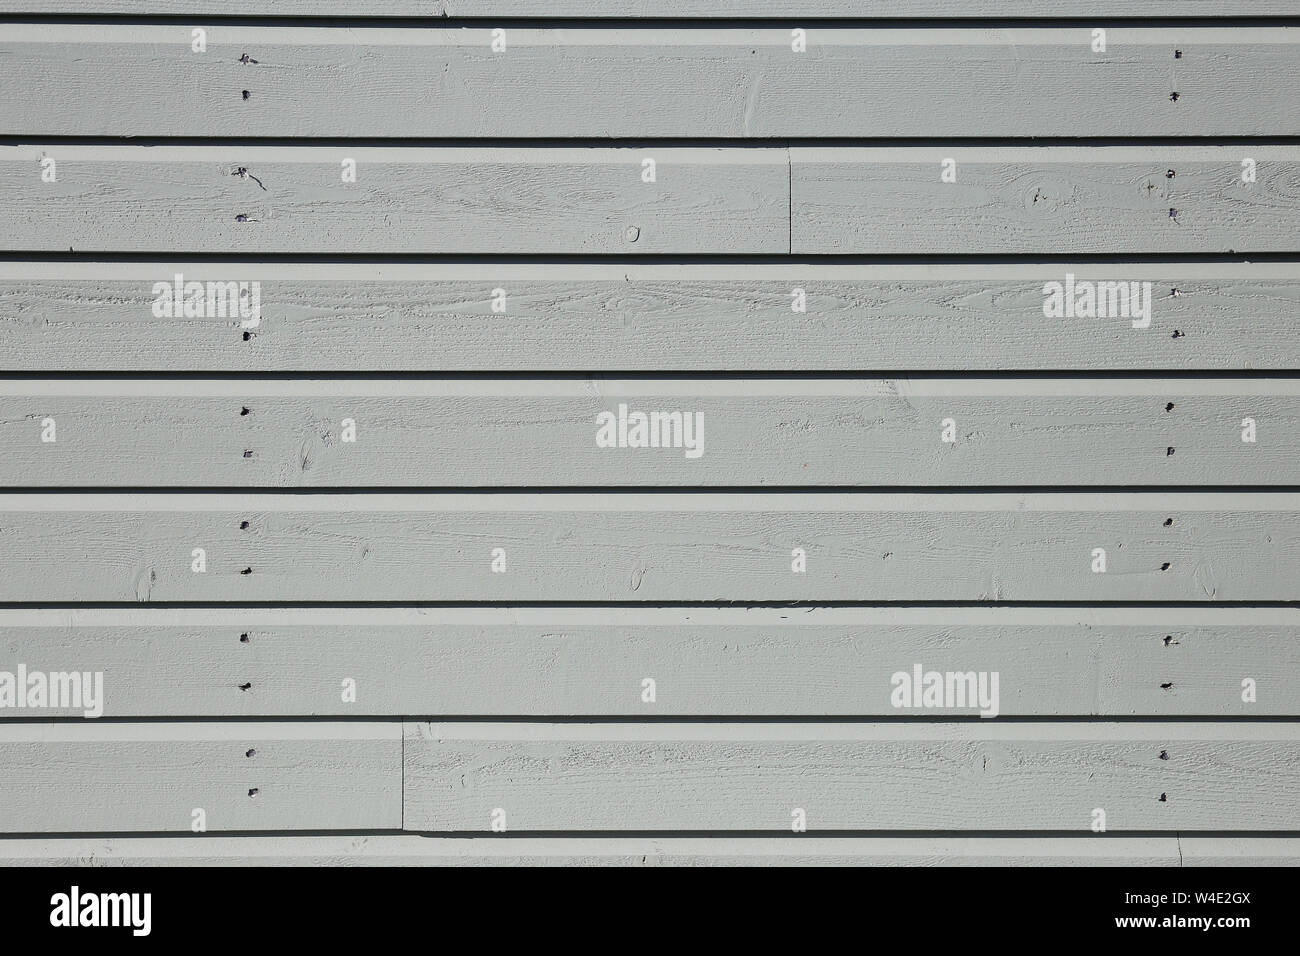 Pareti in legno / recinzione fatta di bianco di sbozzati. Bella la texture / background fotografato in Finlandia. Dettagli di architettura. Immagine a colori. Foto Stock